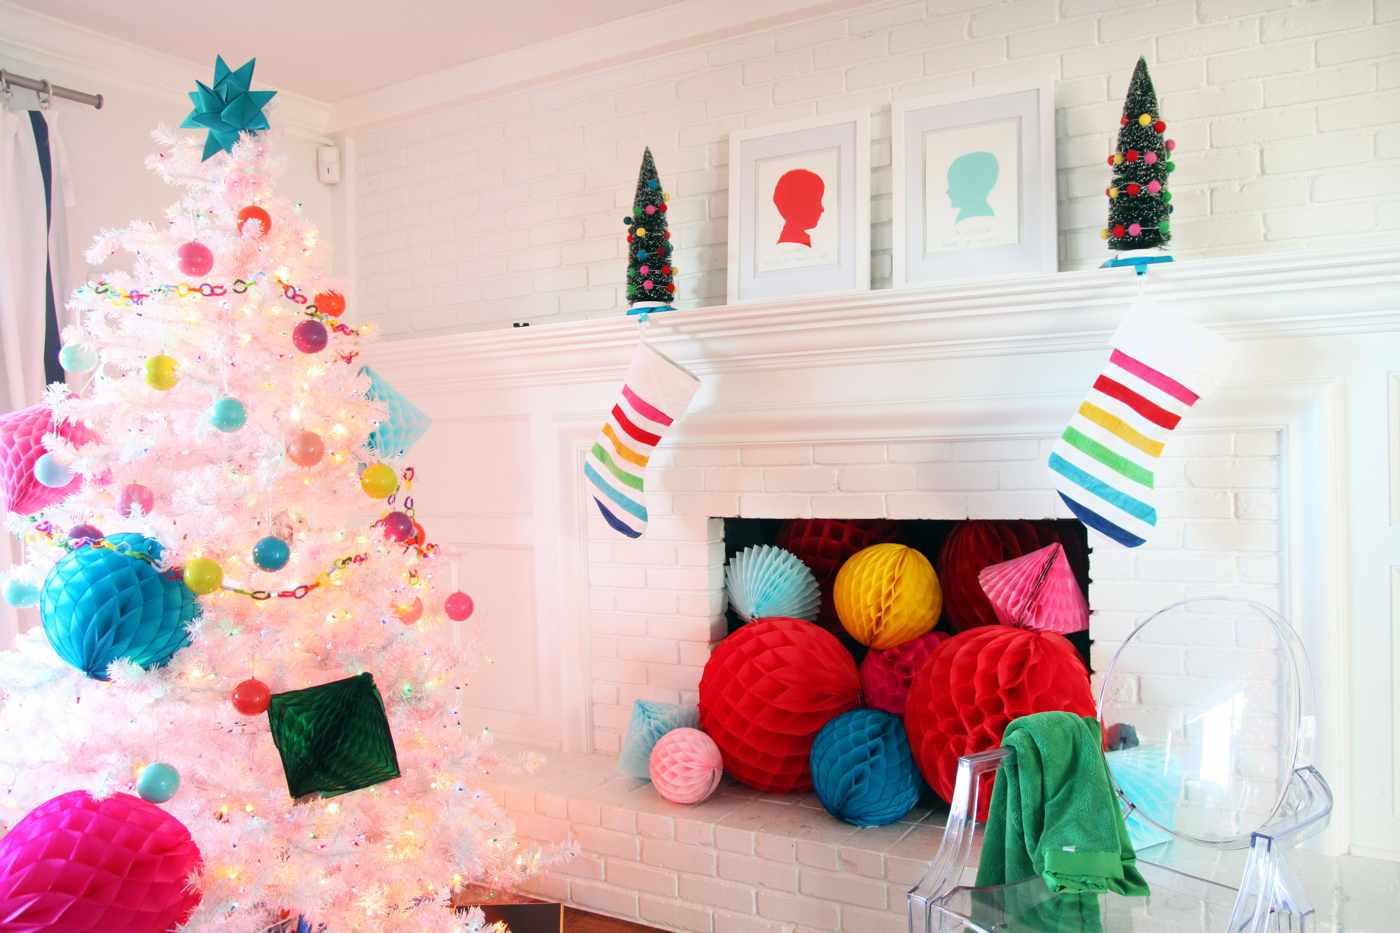 Weihnachtsbaum schmücken Trends lustig in Regenbogenfarben weißer künstlicher Christbaum dekorieren mit Papier Origami Sternen